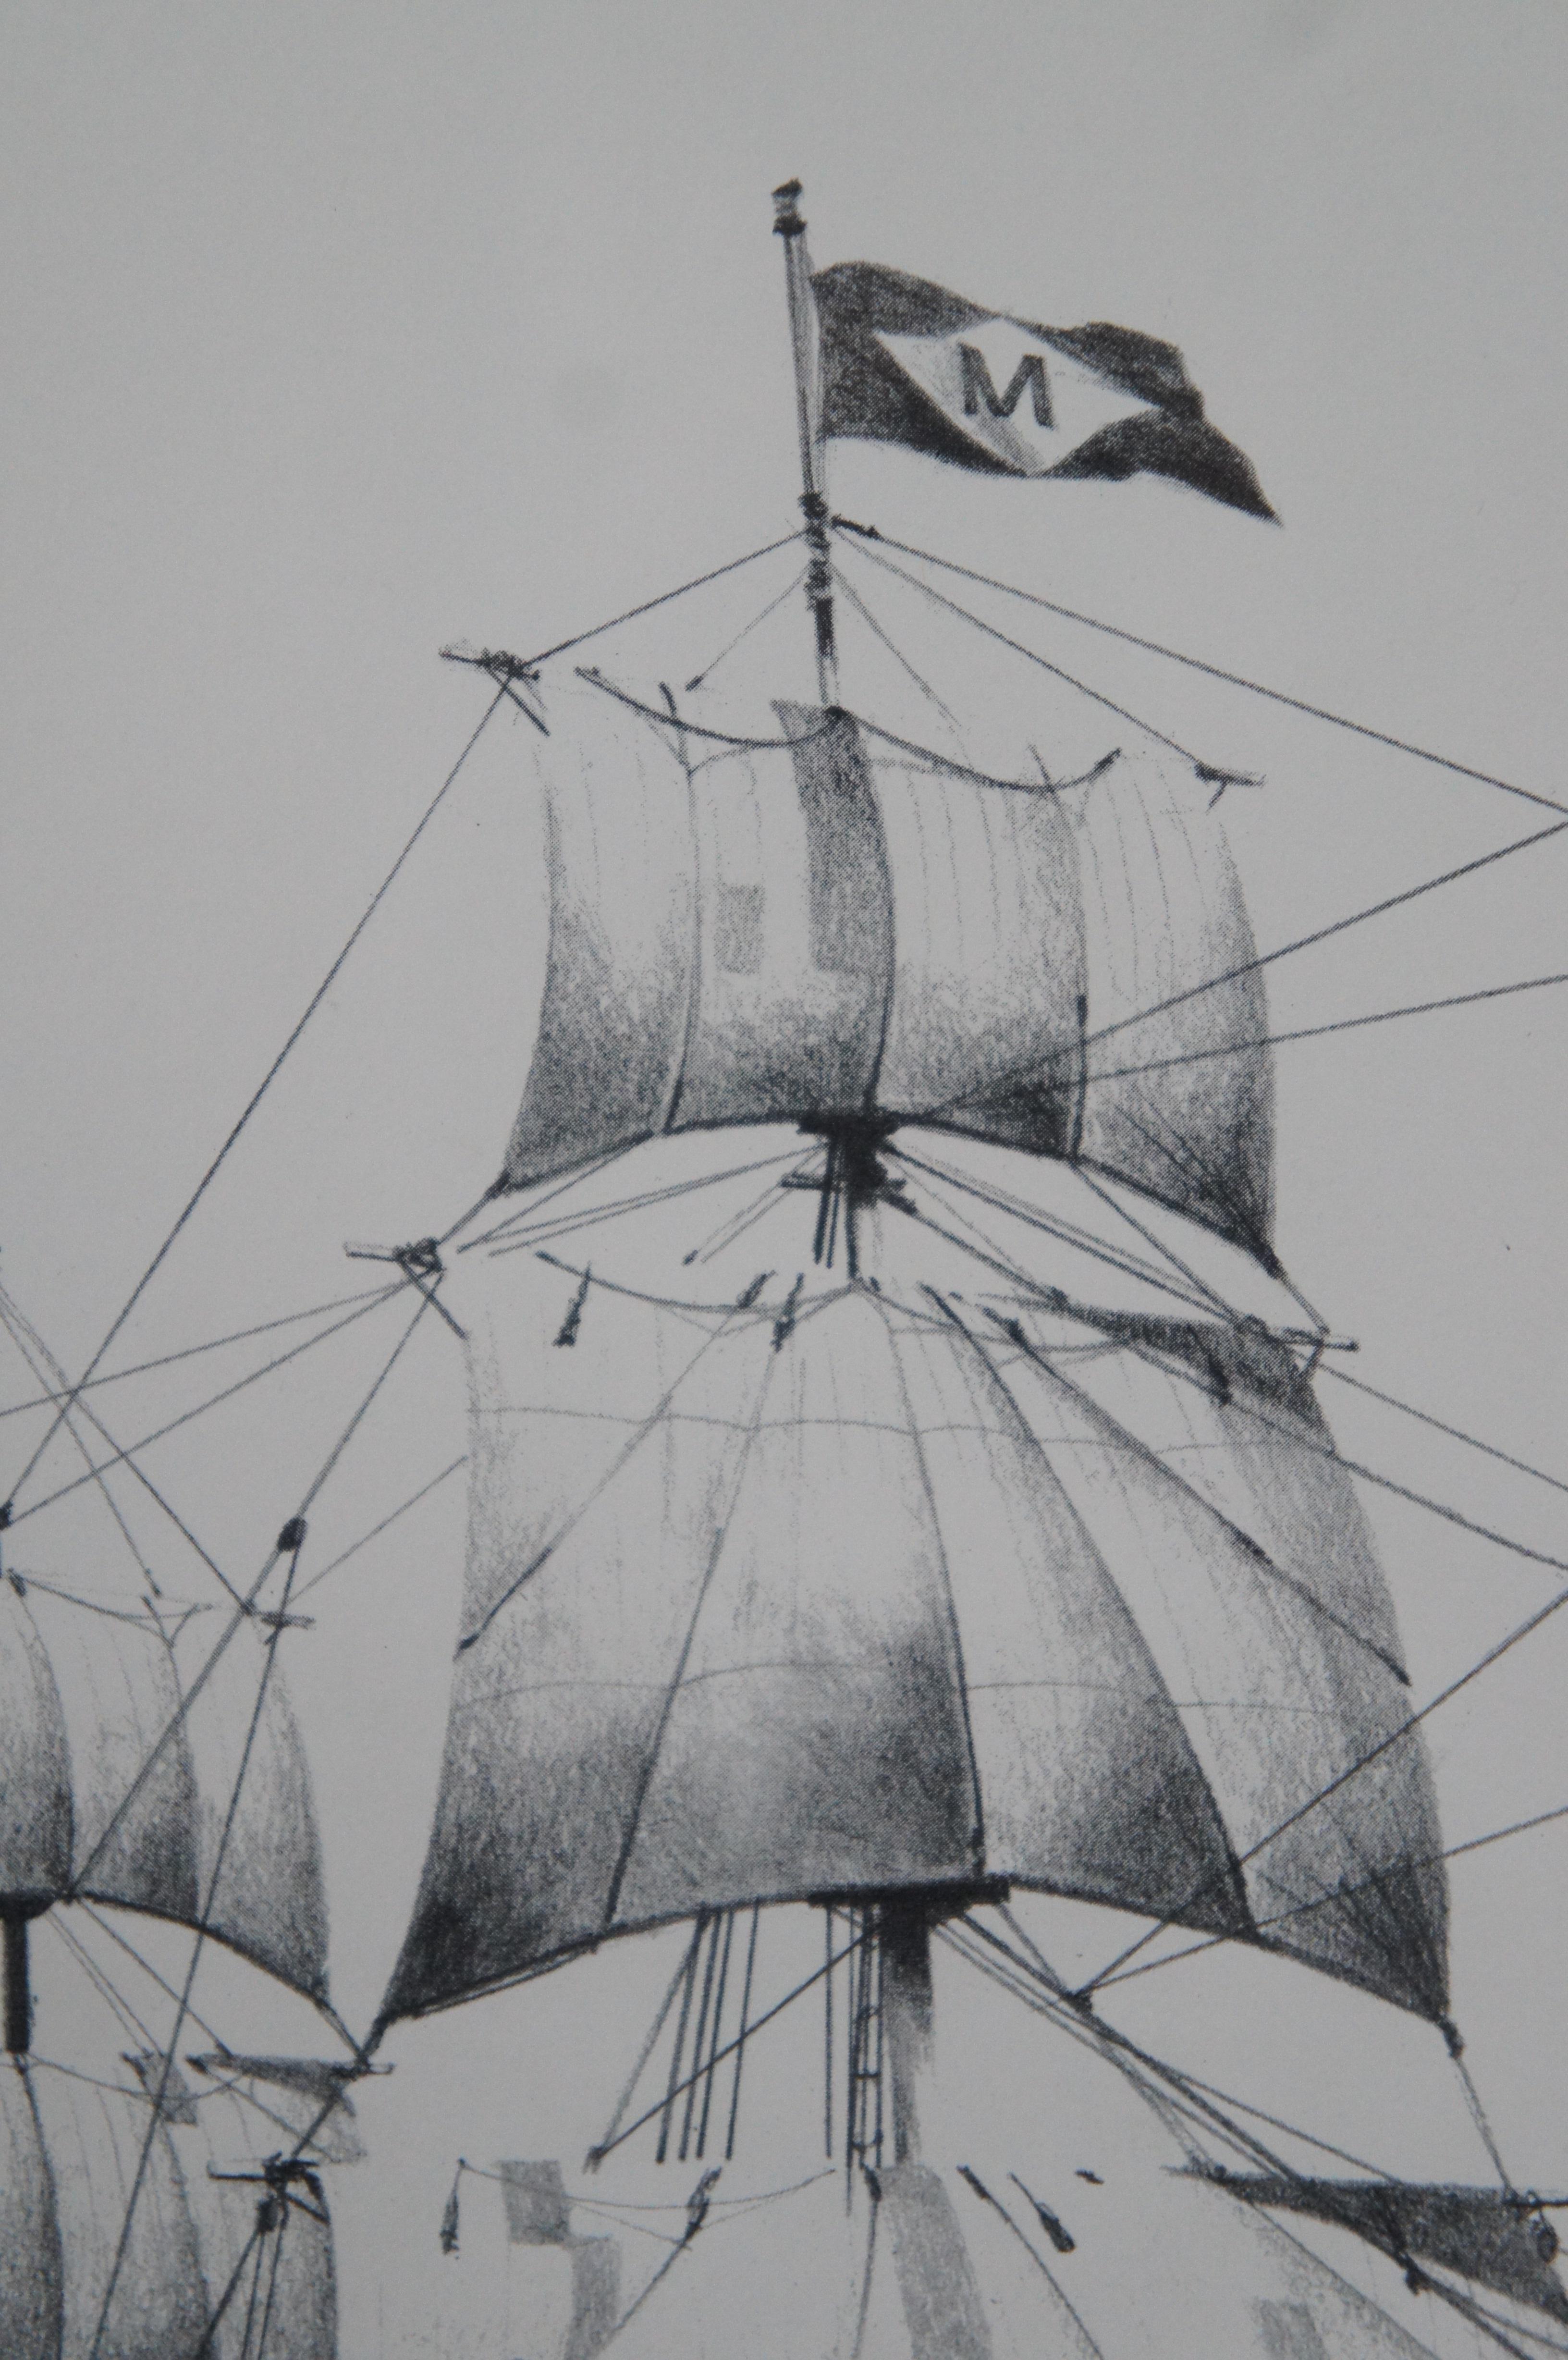 Der Walfänger Charles W. Morgan Nautische maritime Lithographie Druck Lithographie Fowler 26